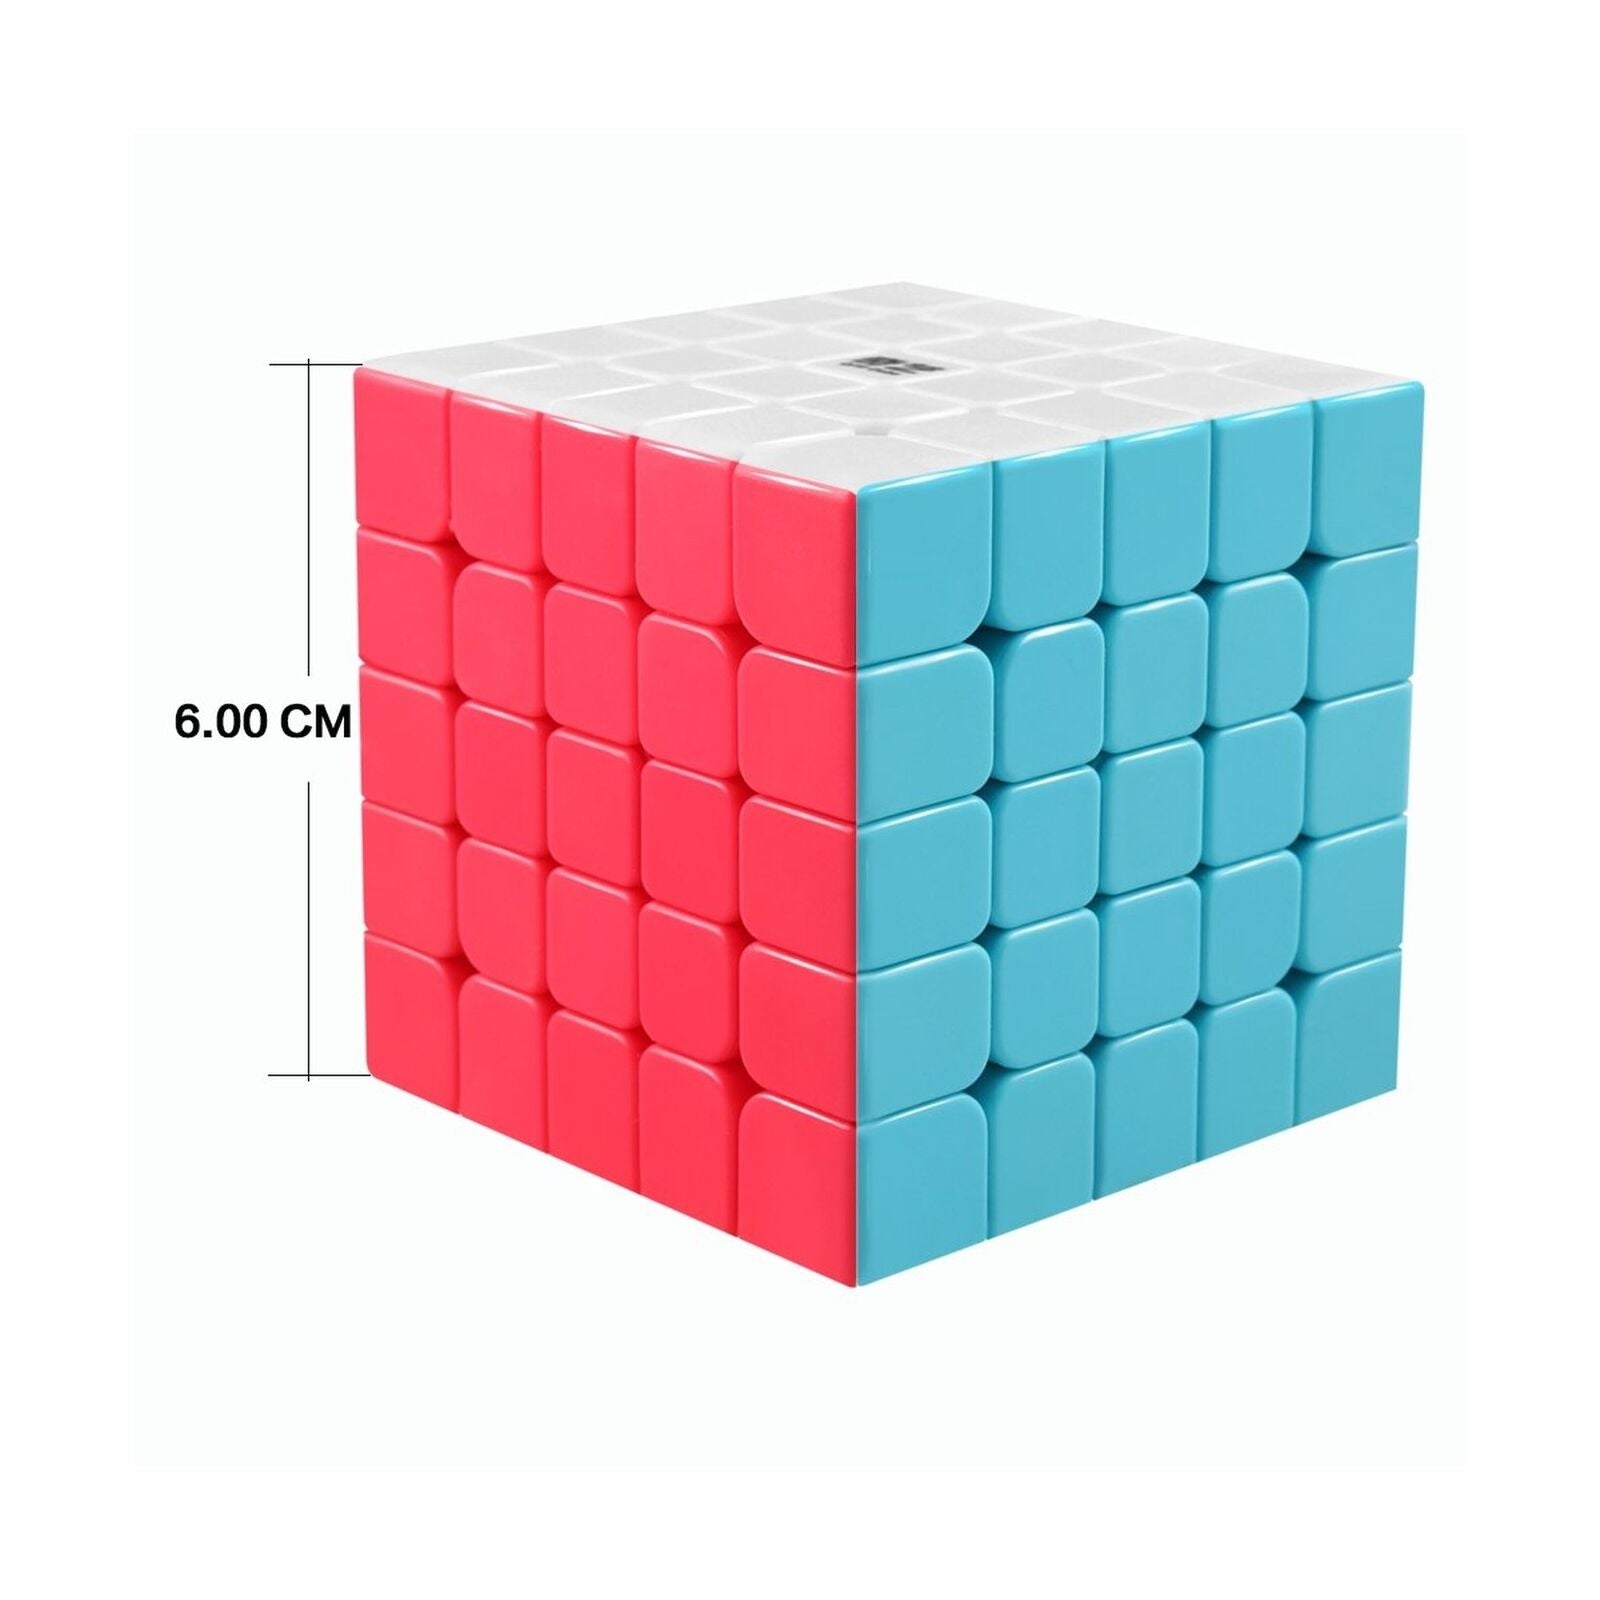 Cubo Rubik 5x5 QiZHENG S QIYI 508